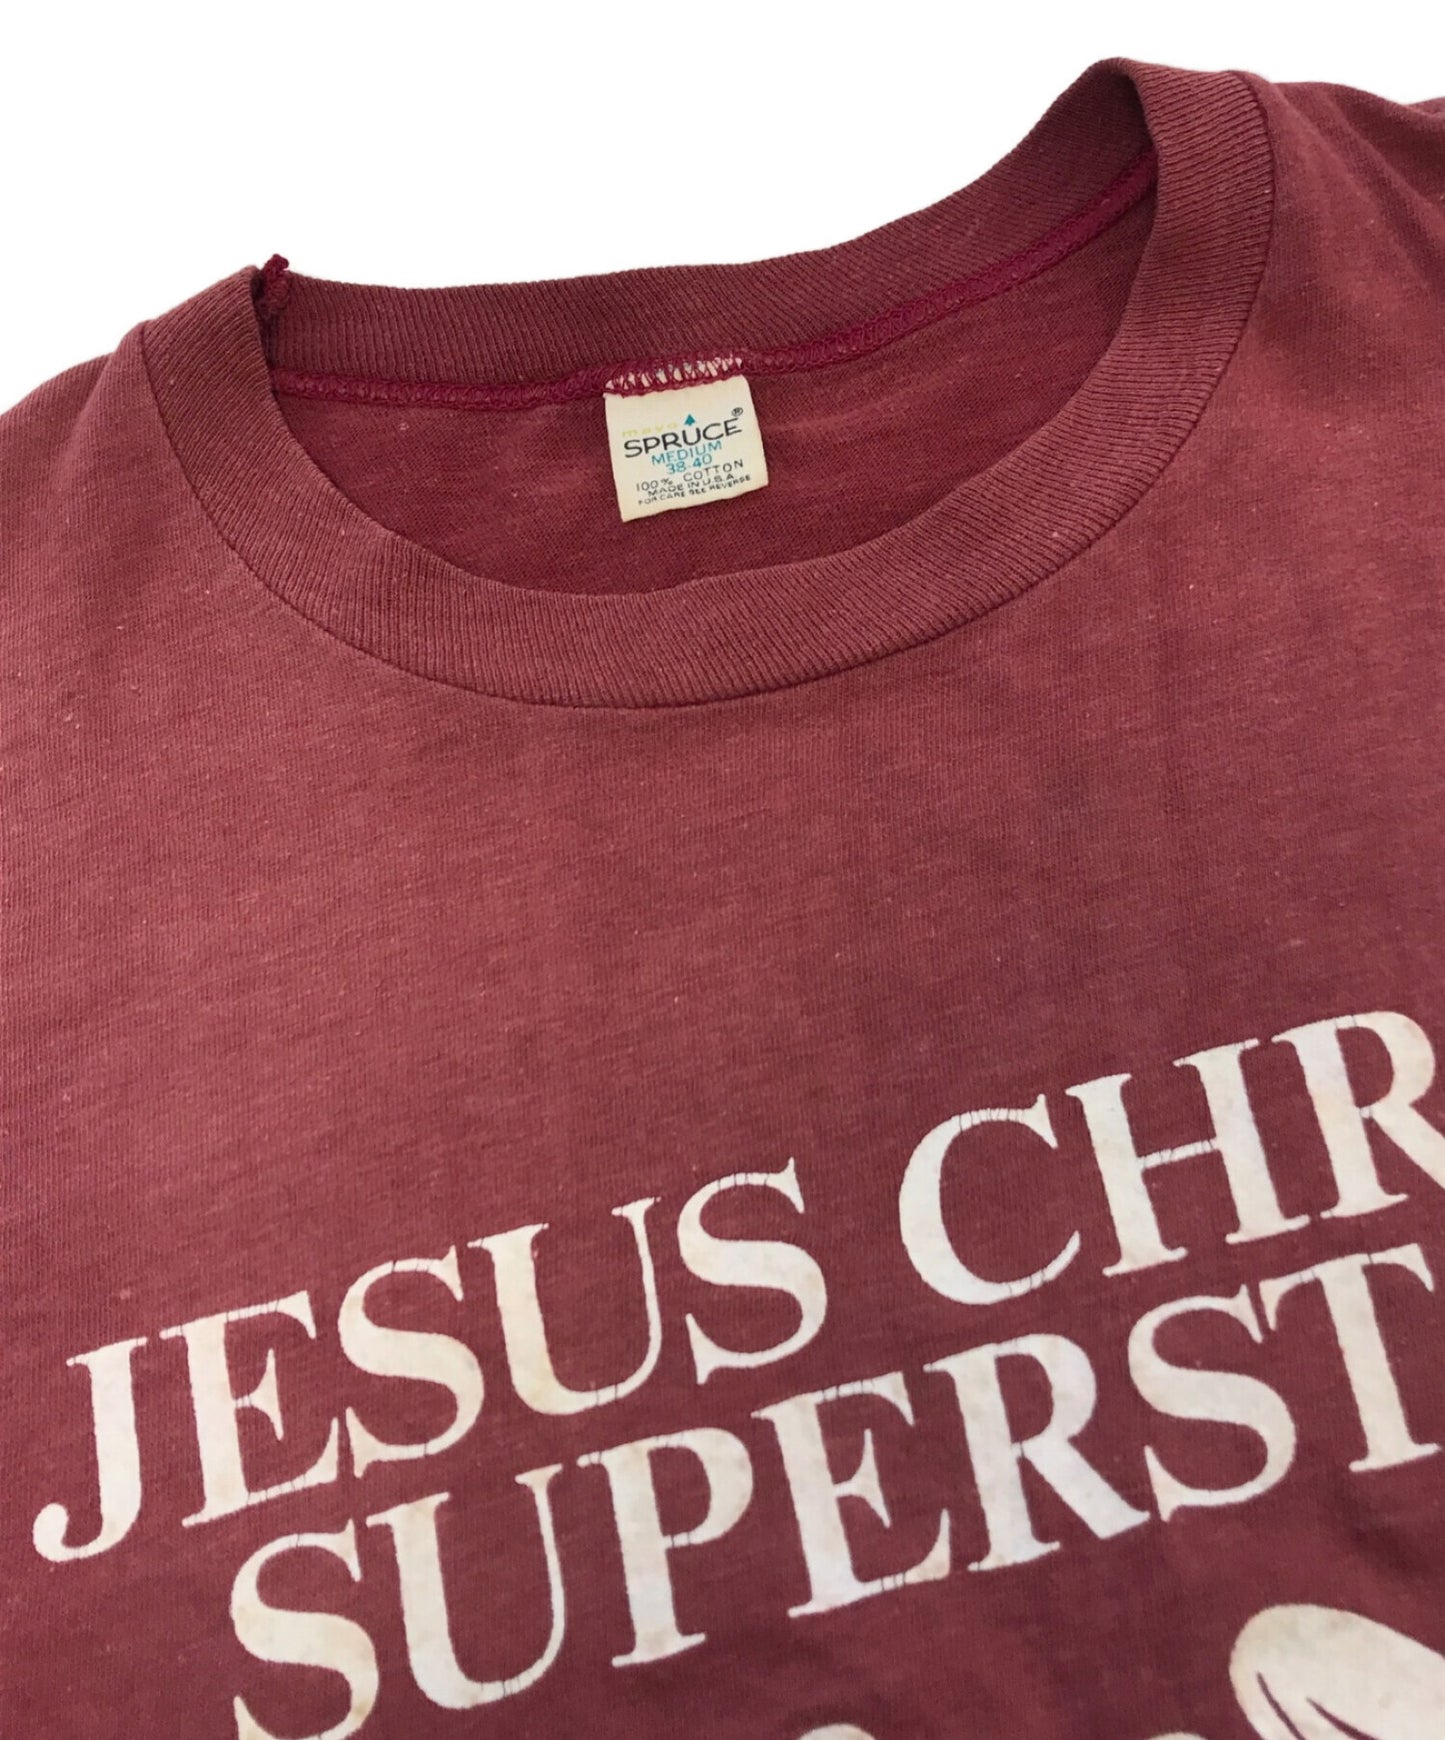 빈티지 쇼코 사운드 티셔츠 70의 예수 그리스도 슈퍼 스타